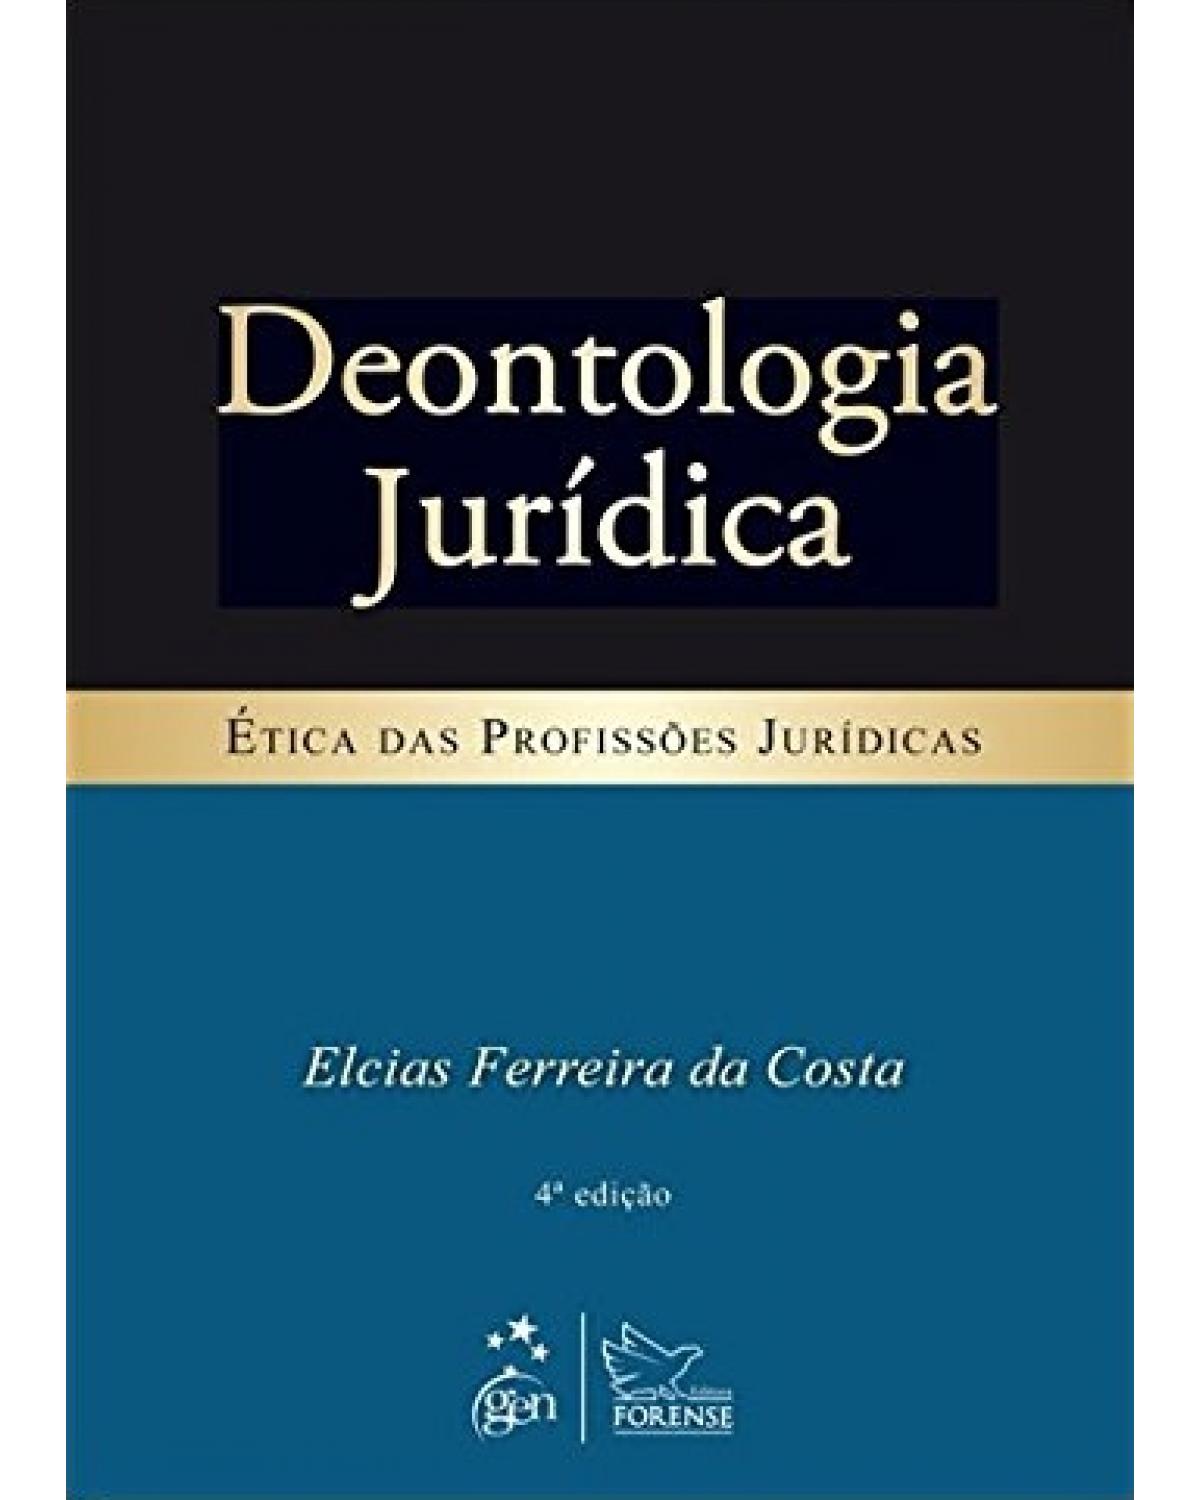 Deontologia jurídica - Ética das profissões jurídicas - 4ª Edição | 2013